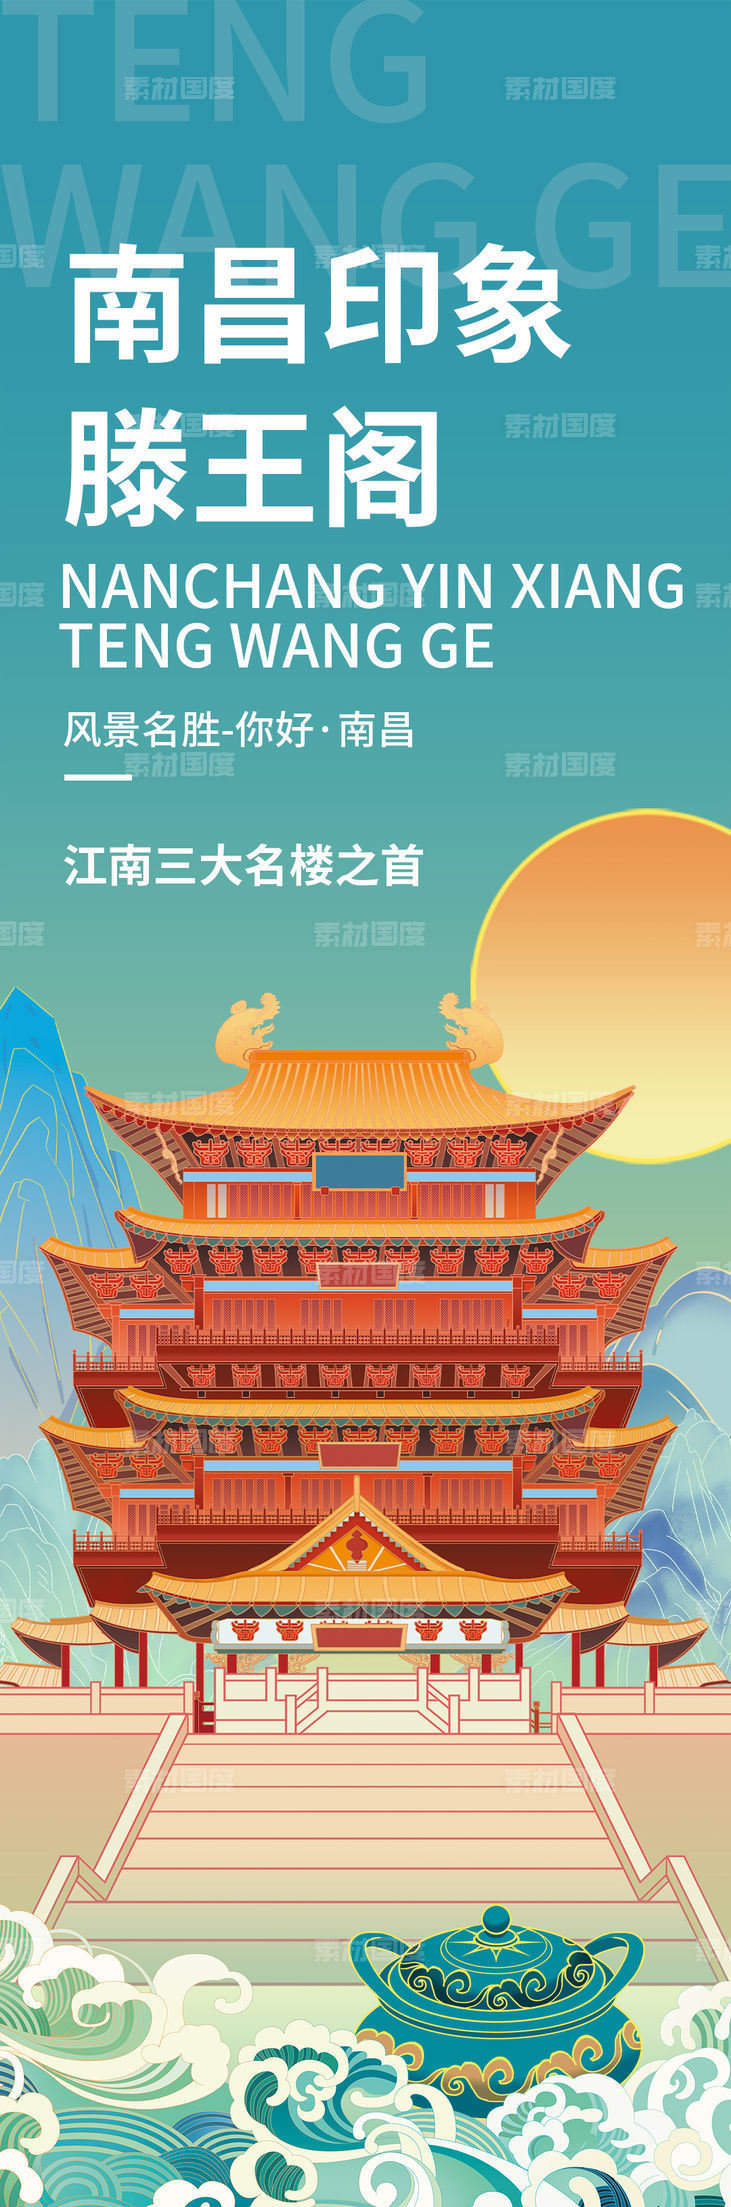 南昌印象滕王阁旅游海报